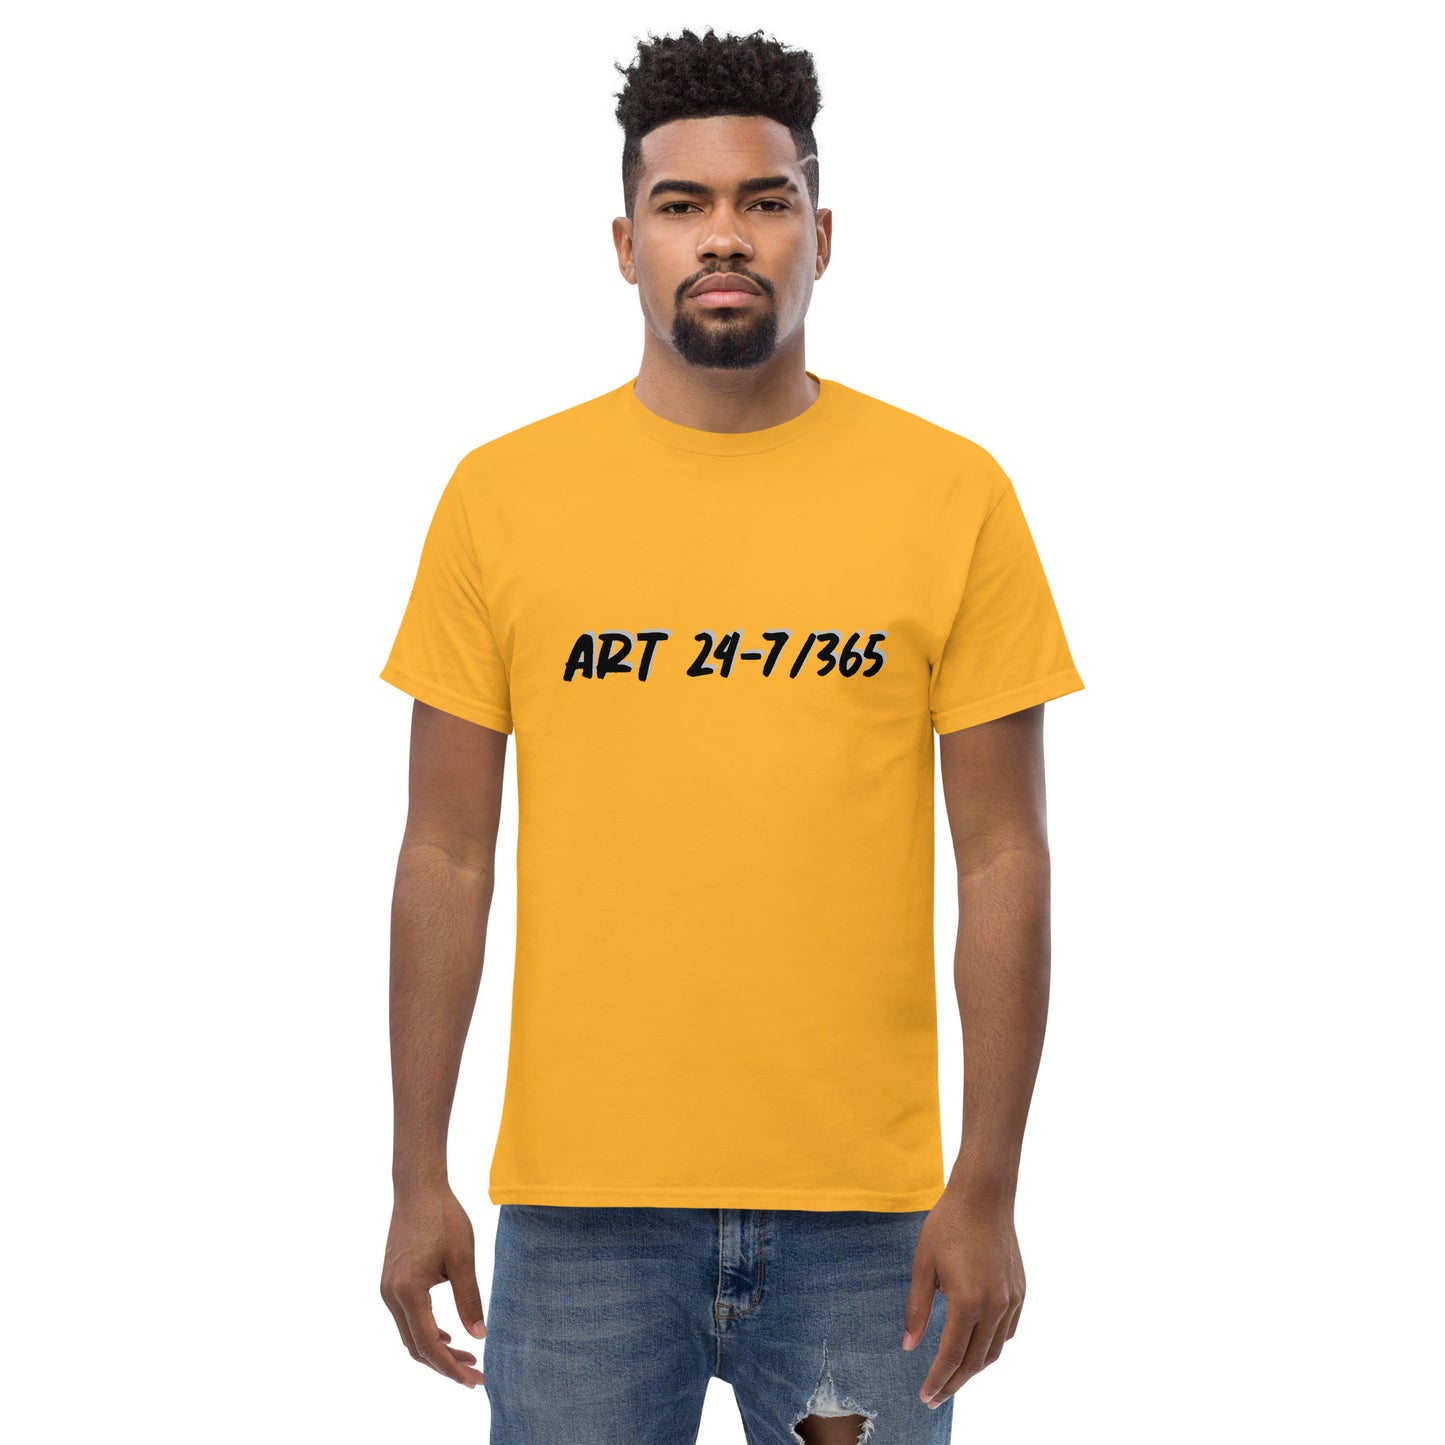 Art 24-7/365 Men's T-Shirt